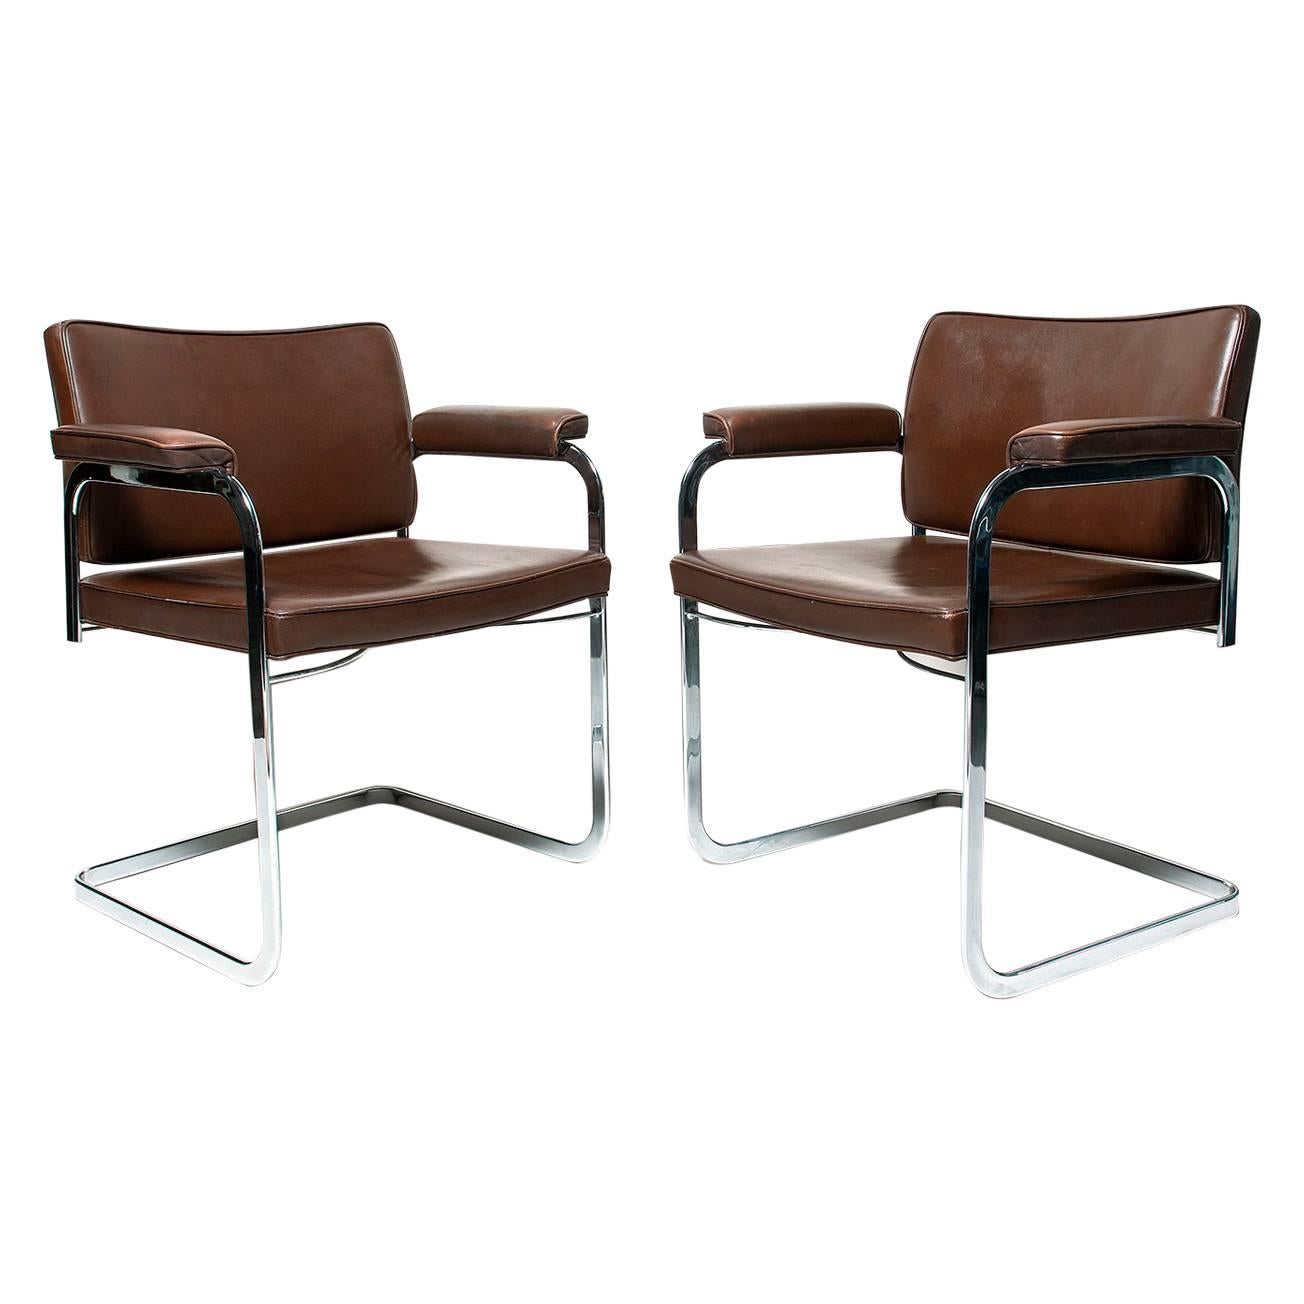 Robert Haussmann Flat Bar Chairs for De Sede